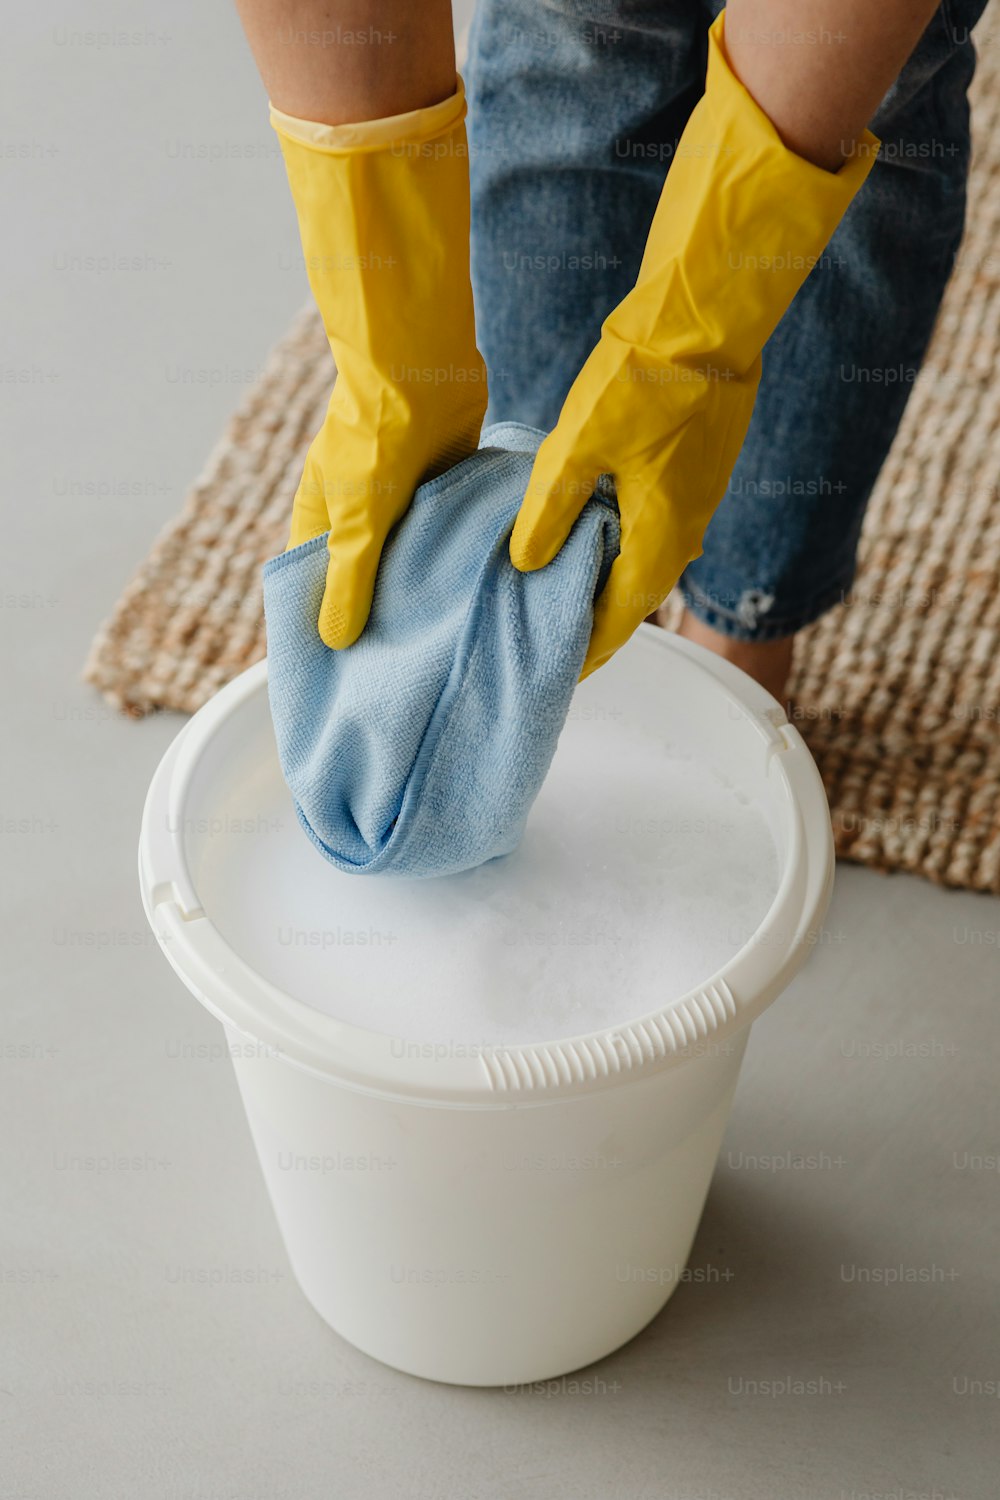 Una persona con guantes amarillos limpiando un cubo